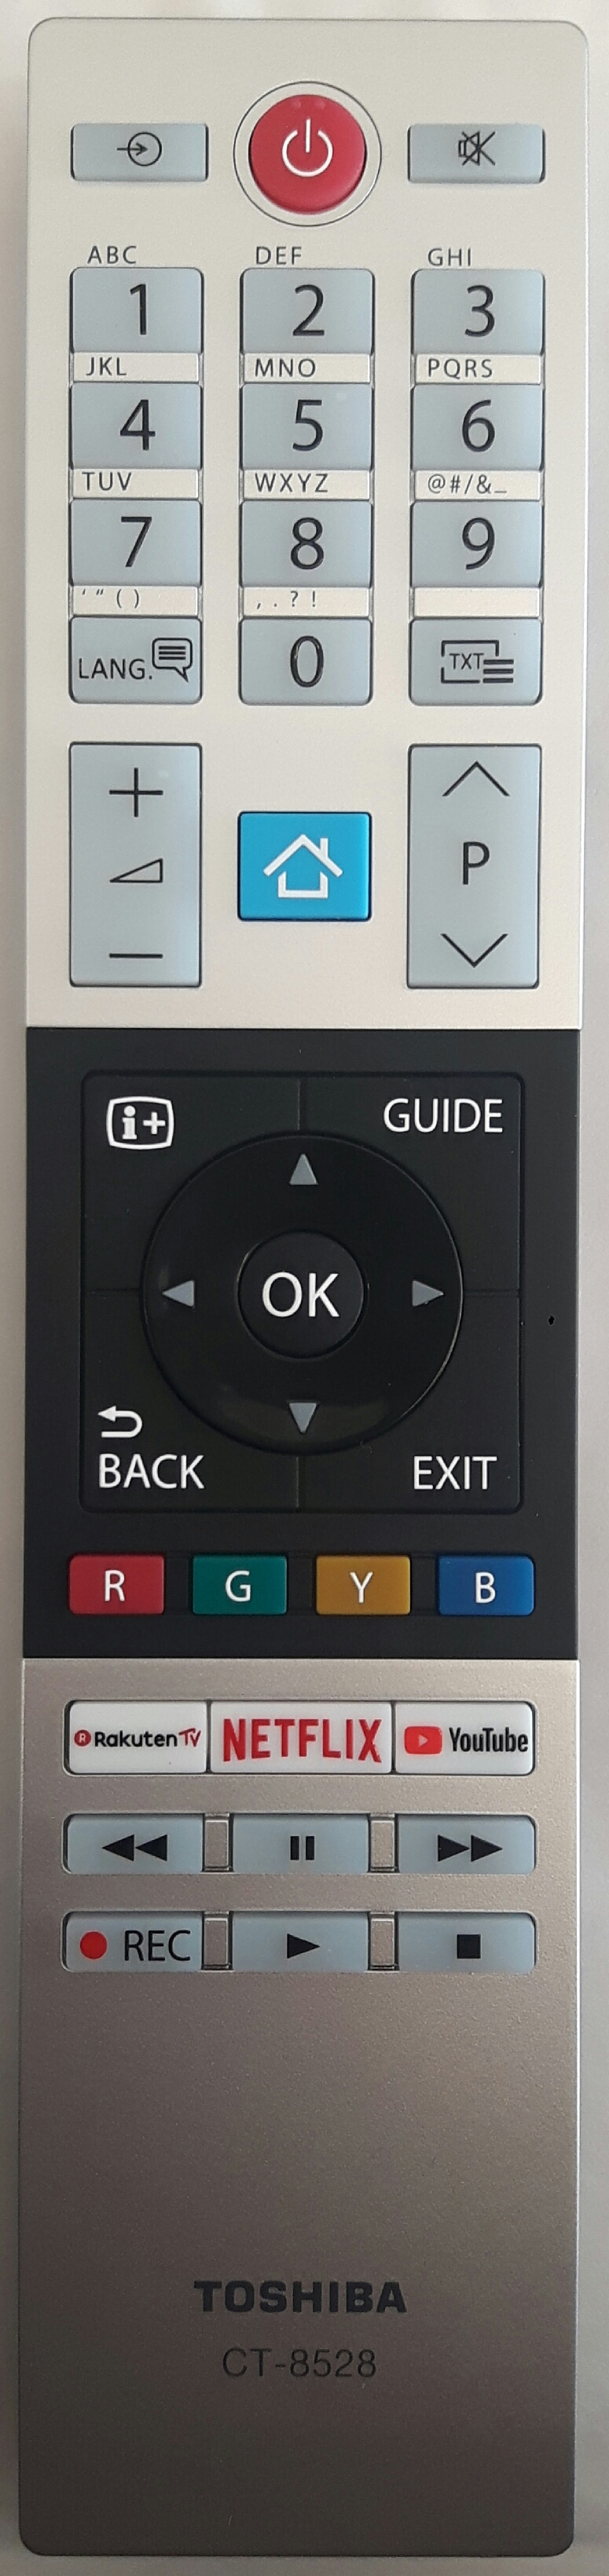 TOSHIBA 10120540 Remote Control Original 